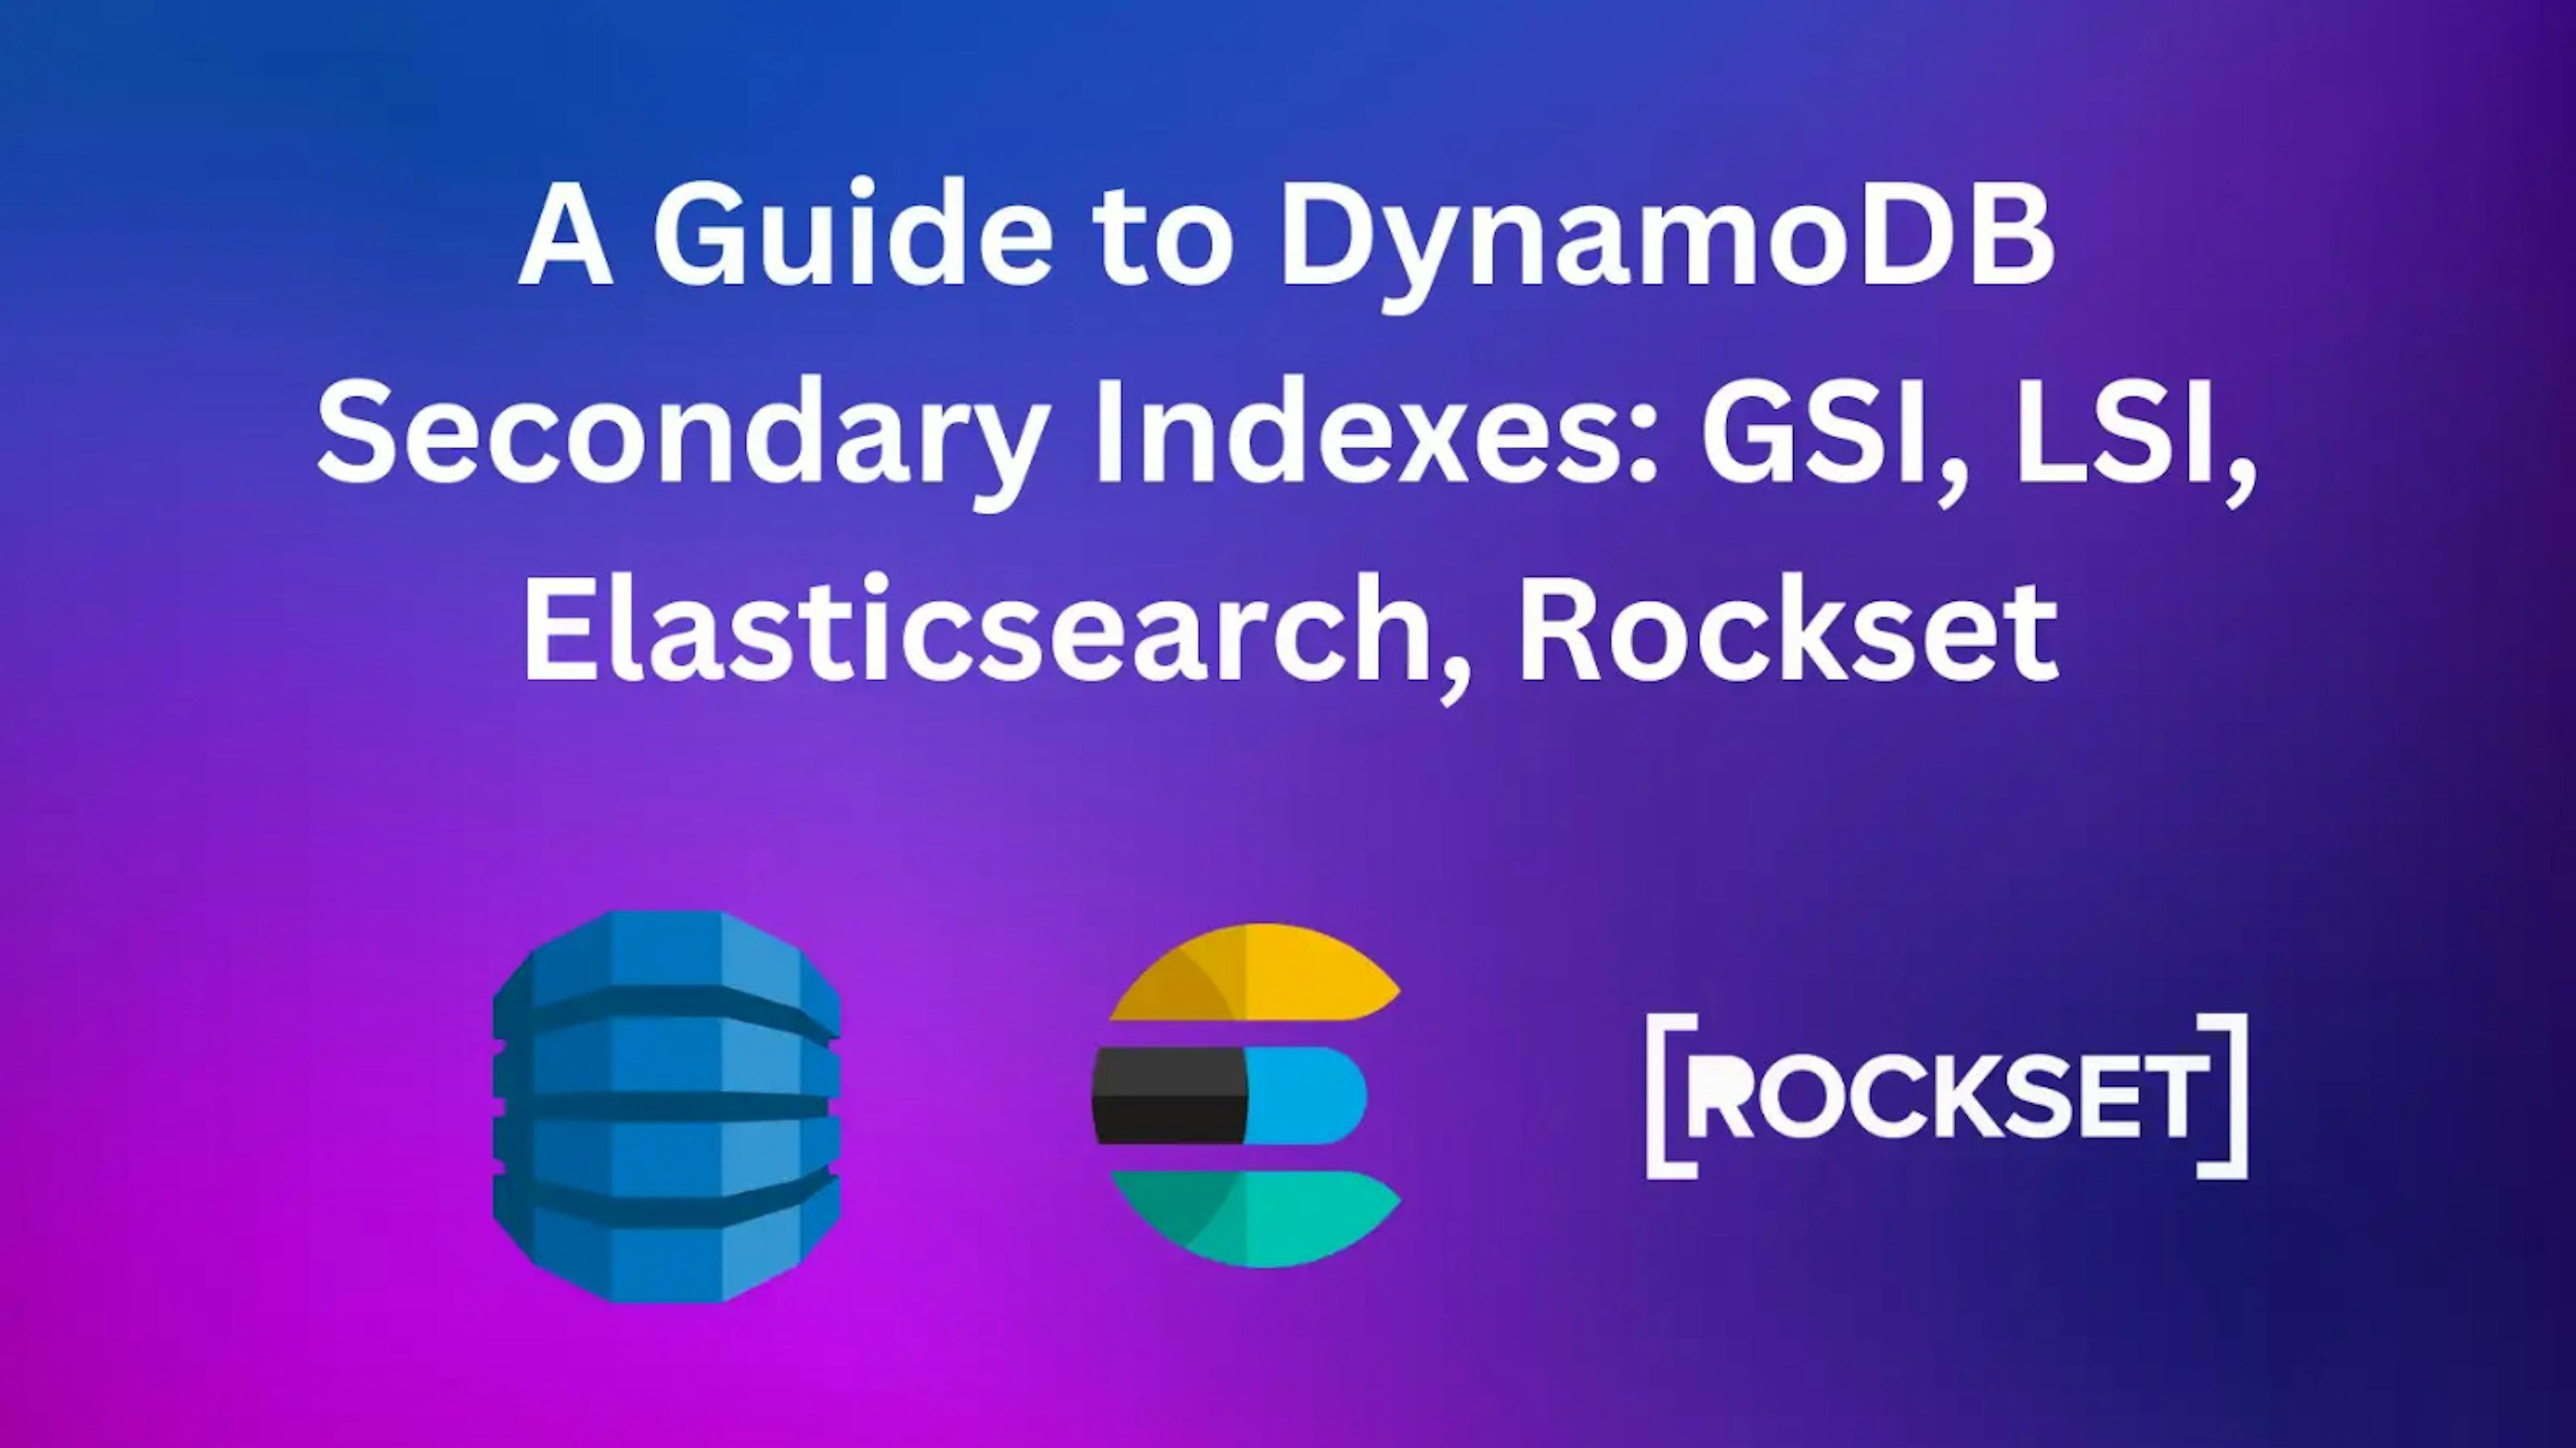 featured image - Wie schlägt sich Rockset im Vergleich zu Elasticsearch in sekundären DynamoDB-Indizes?